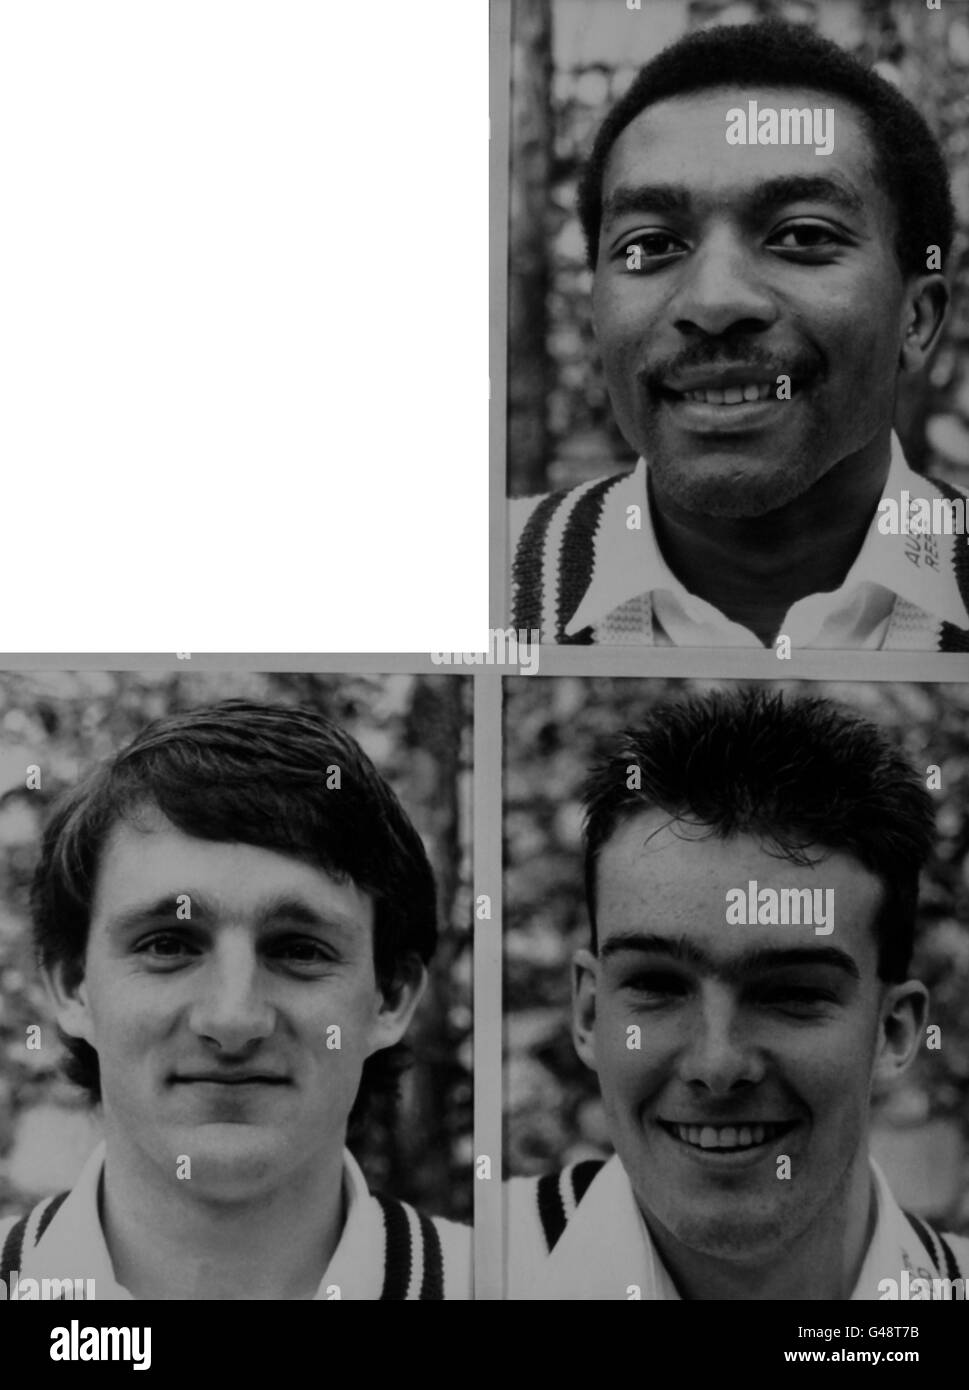 Cricket - Middlesex County Cricket Team - 1987 - Porträts. Mitglieder von Middlesex CCC für die Saison 1987, bei Lords. Oben; Neil Williams, unten, von links nach rechts; Ian Hutchinson und Alastair Fraser. Stockfoto